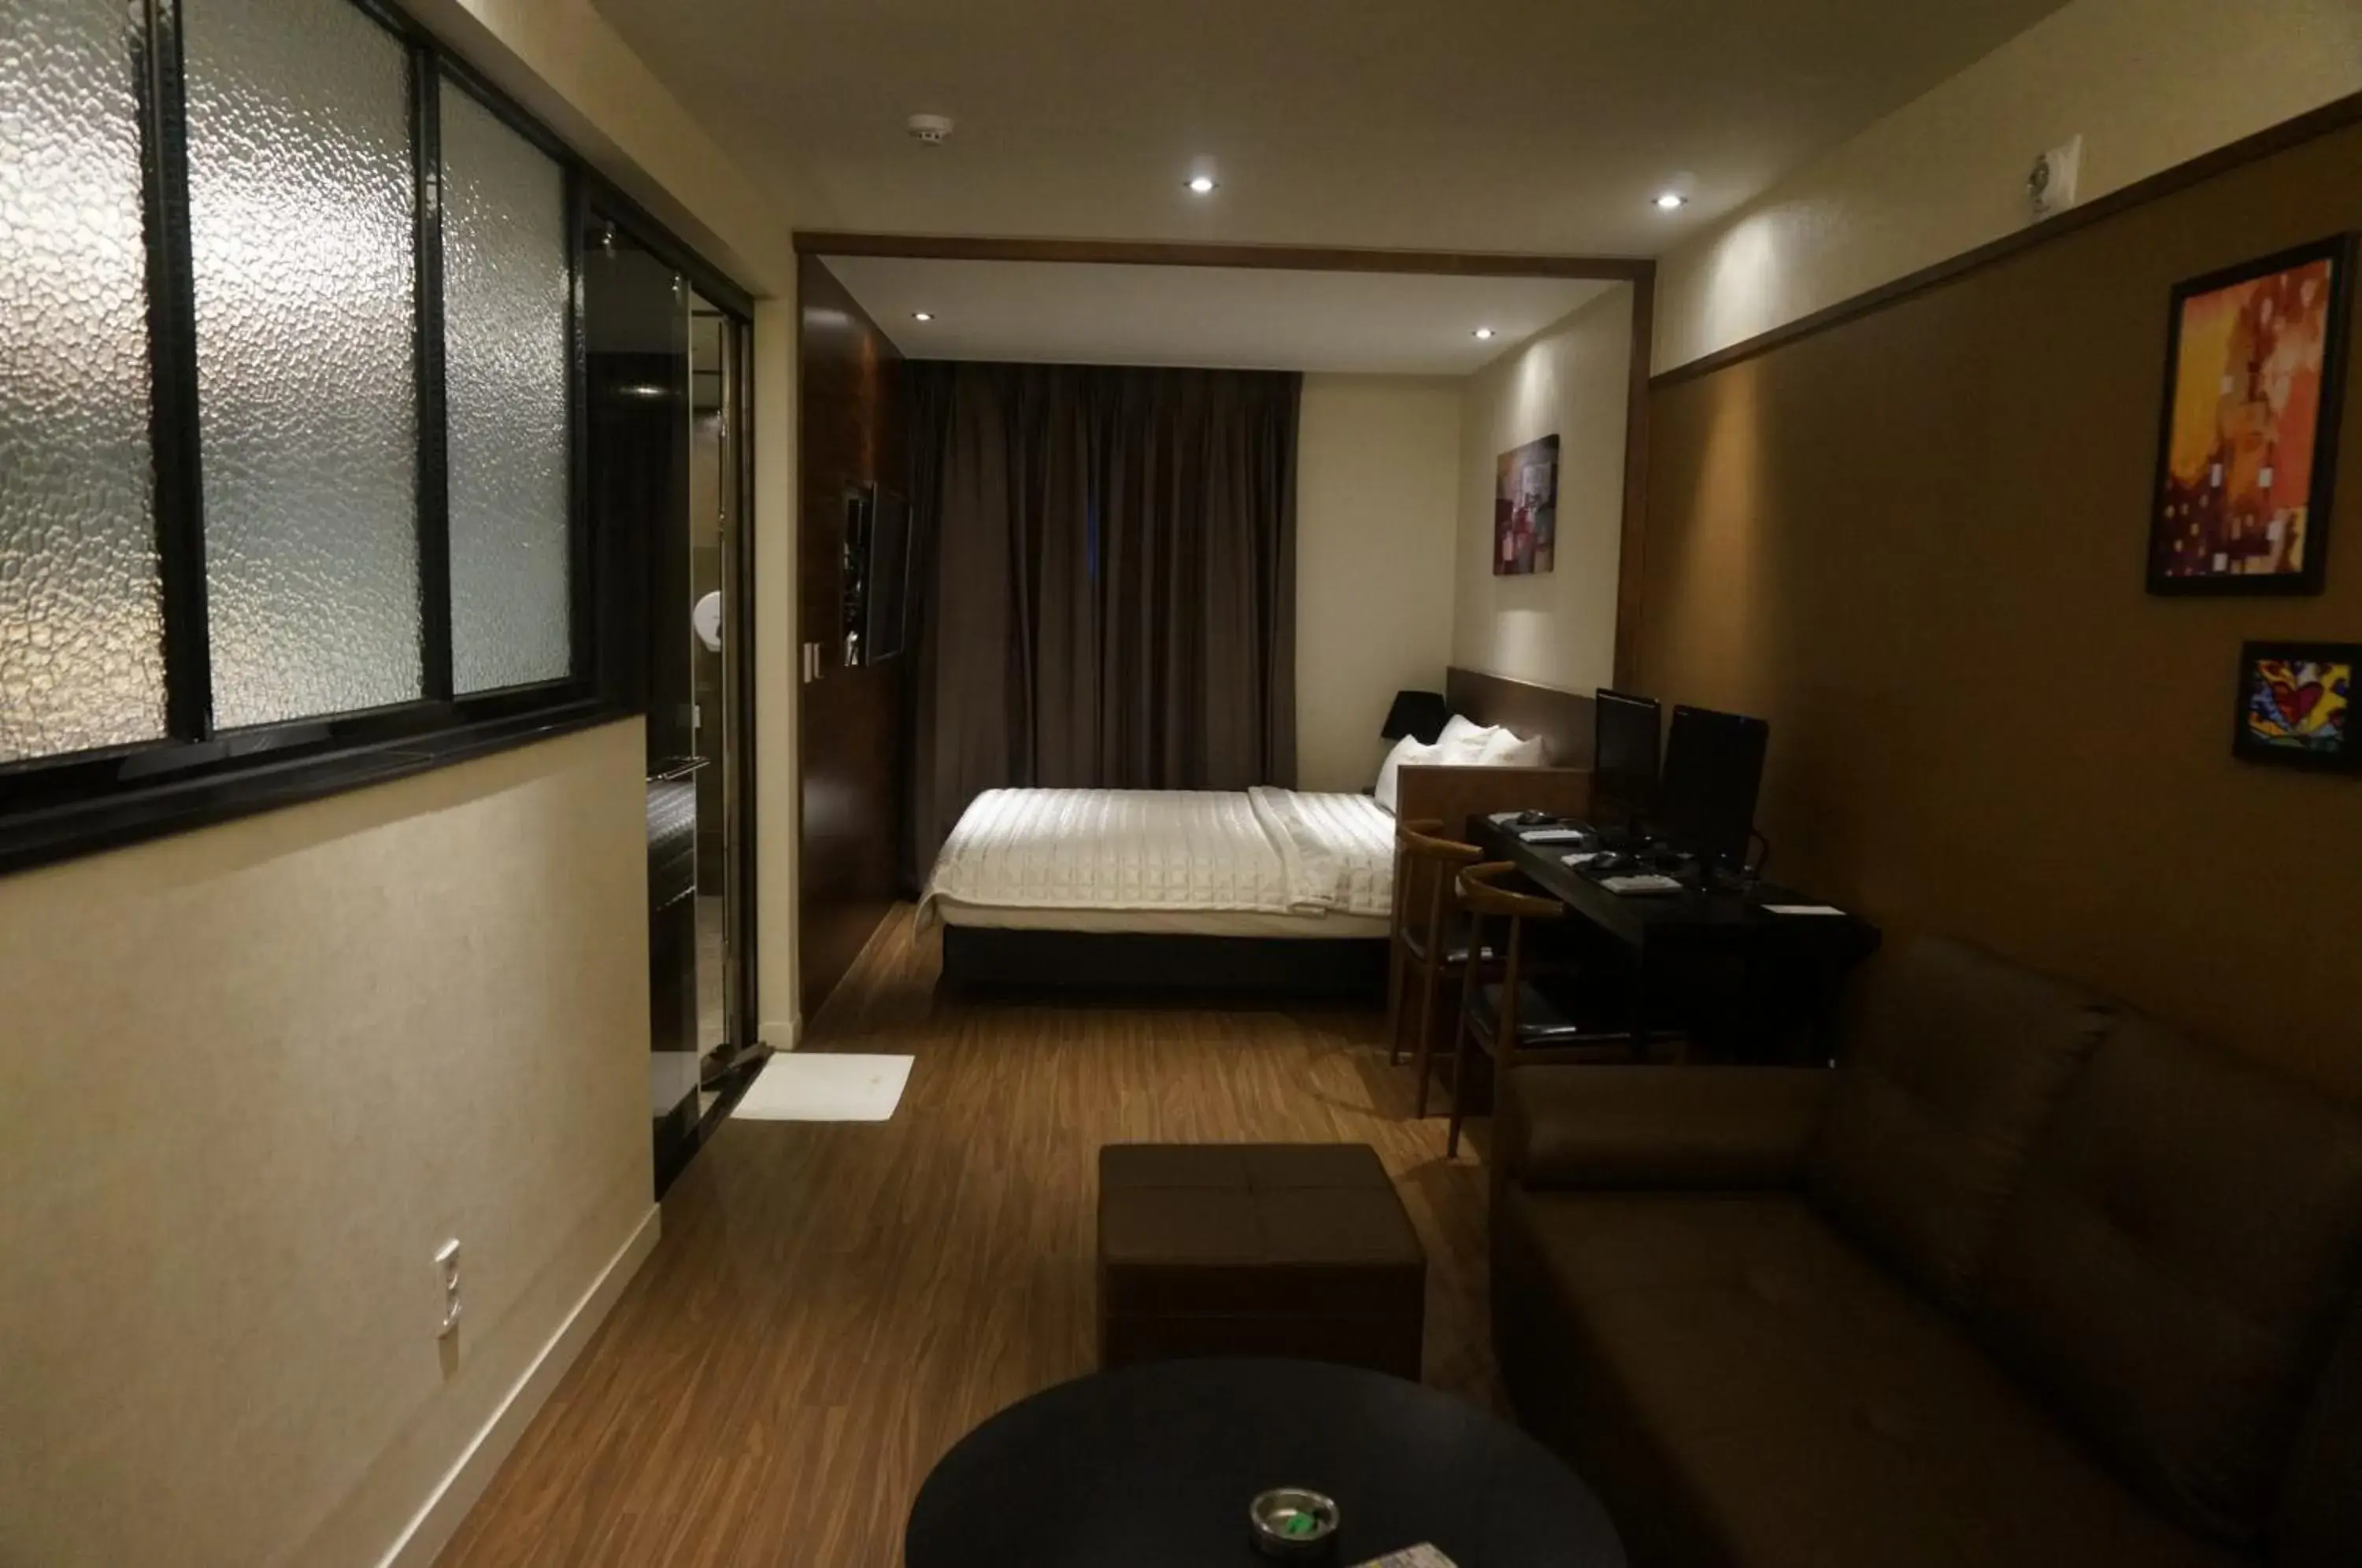 Bedroom, Room Photo in Mu Hotel